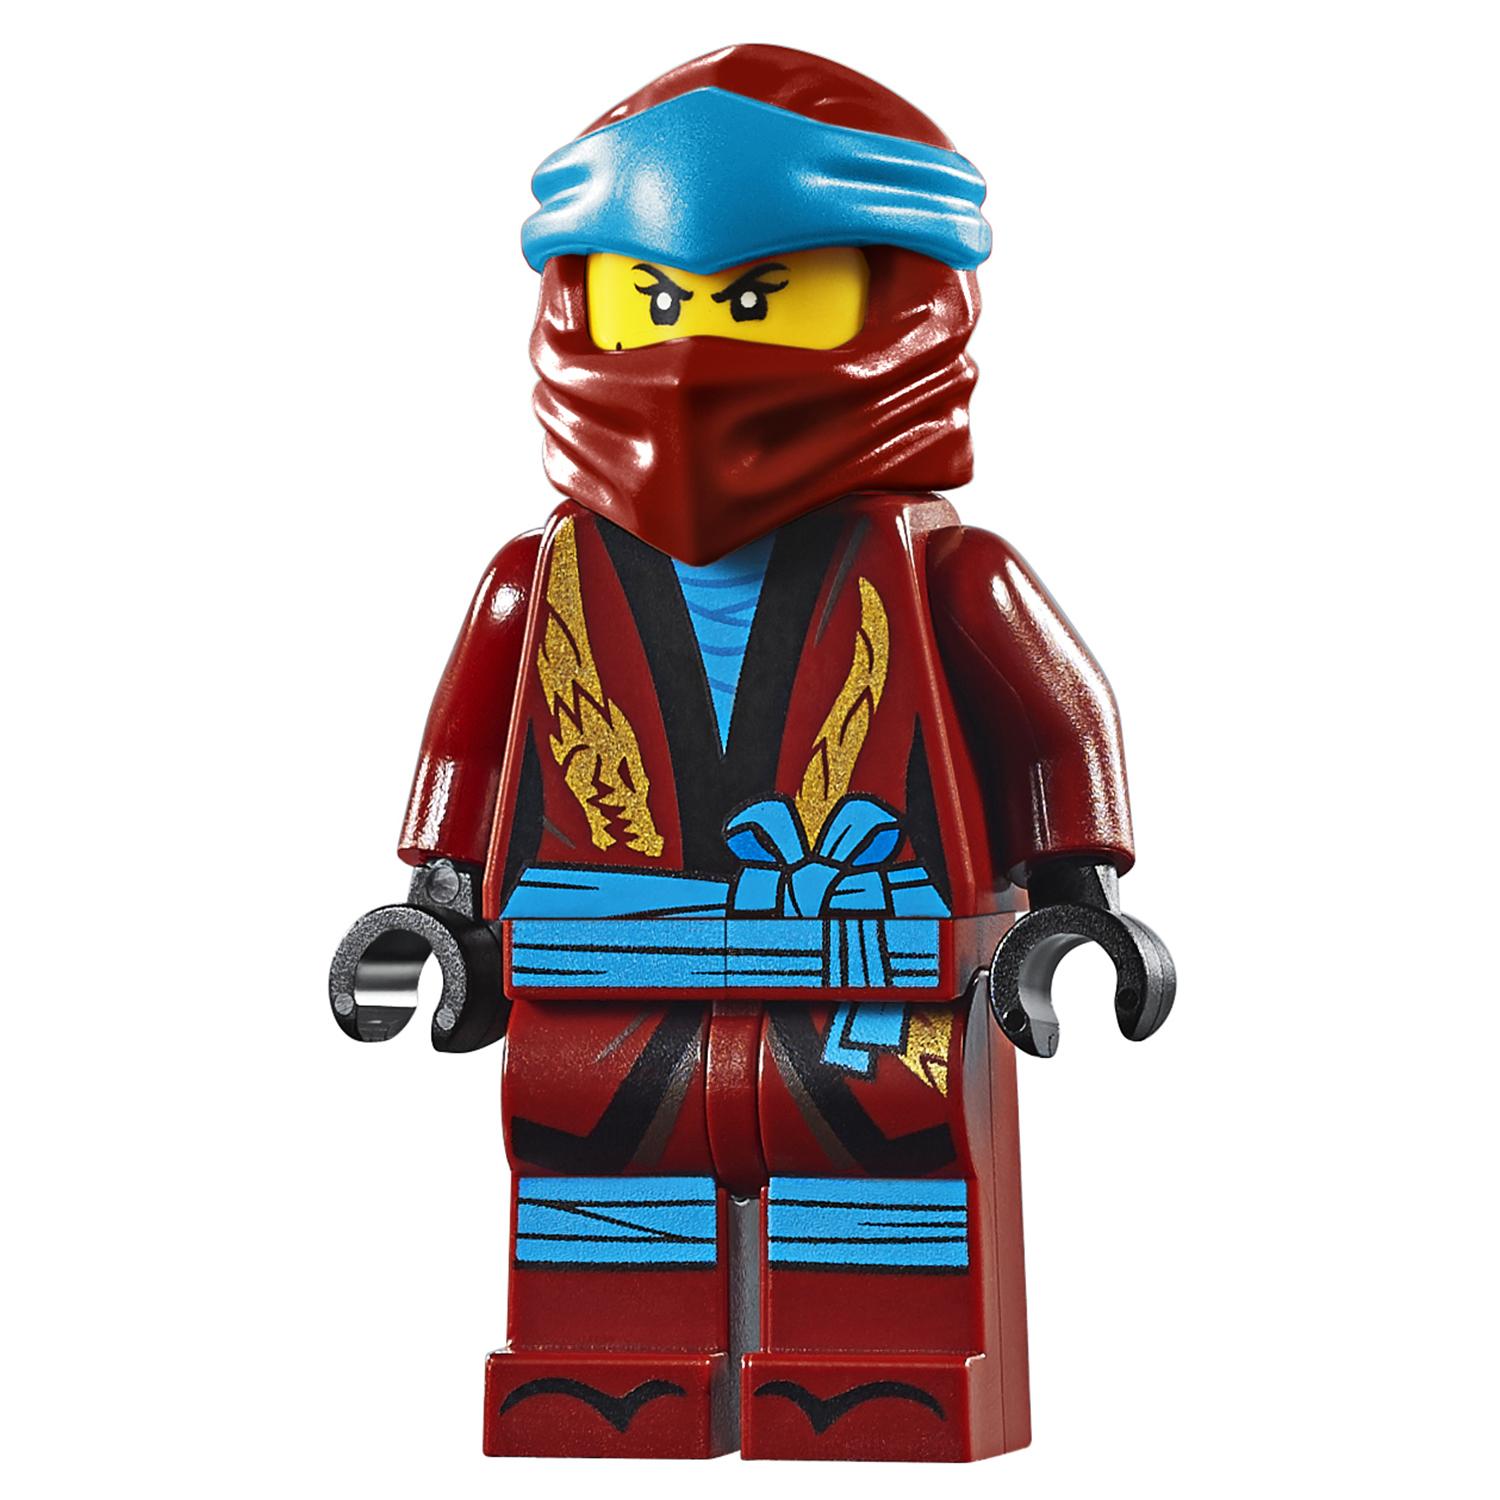 Конструктор LEGO Ninjago - Штормовой истребитель Джея